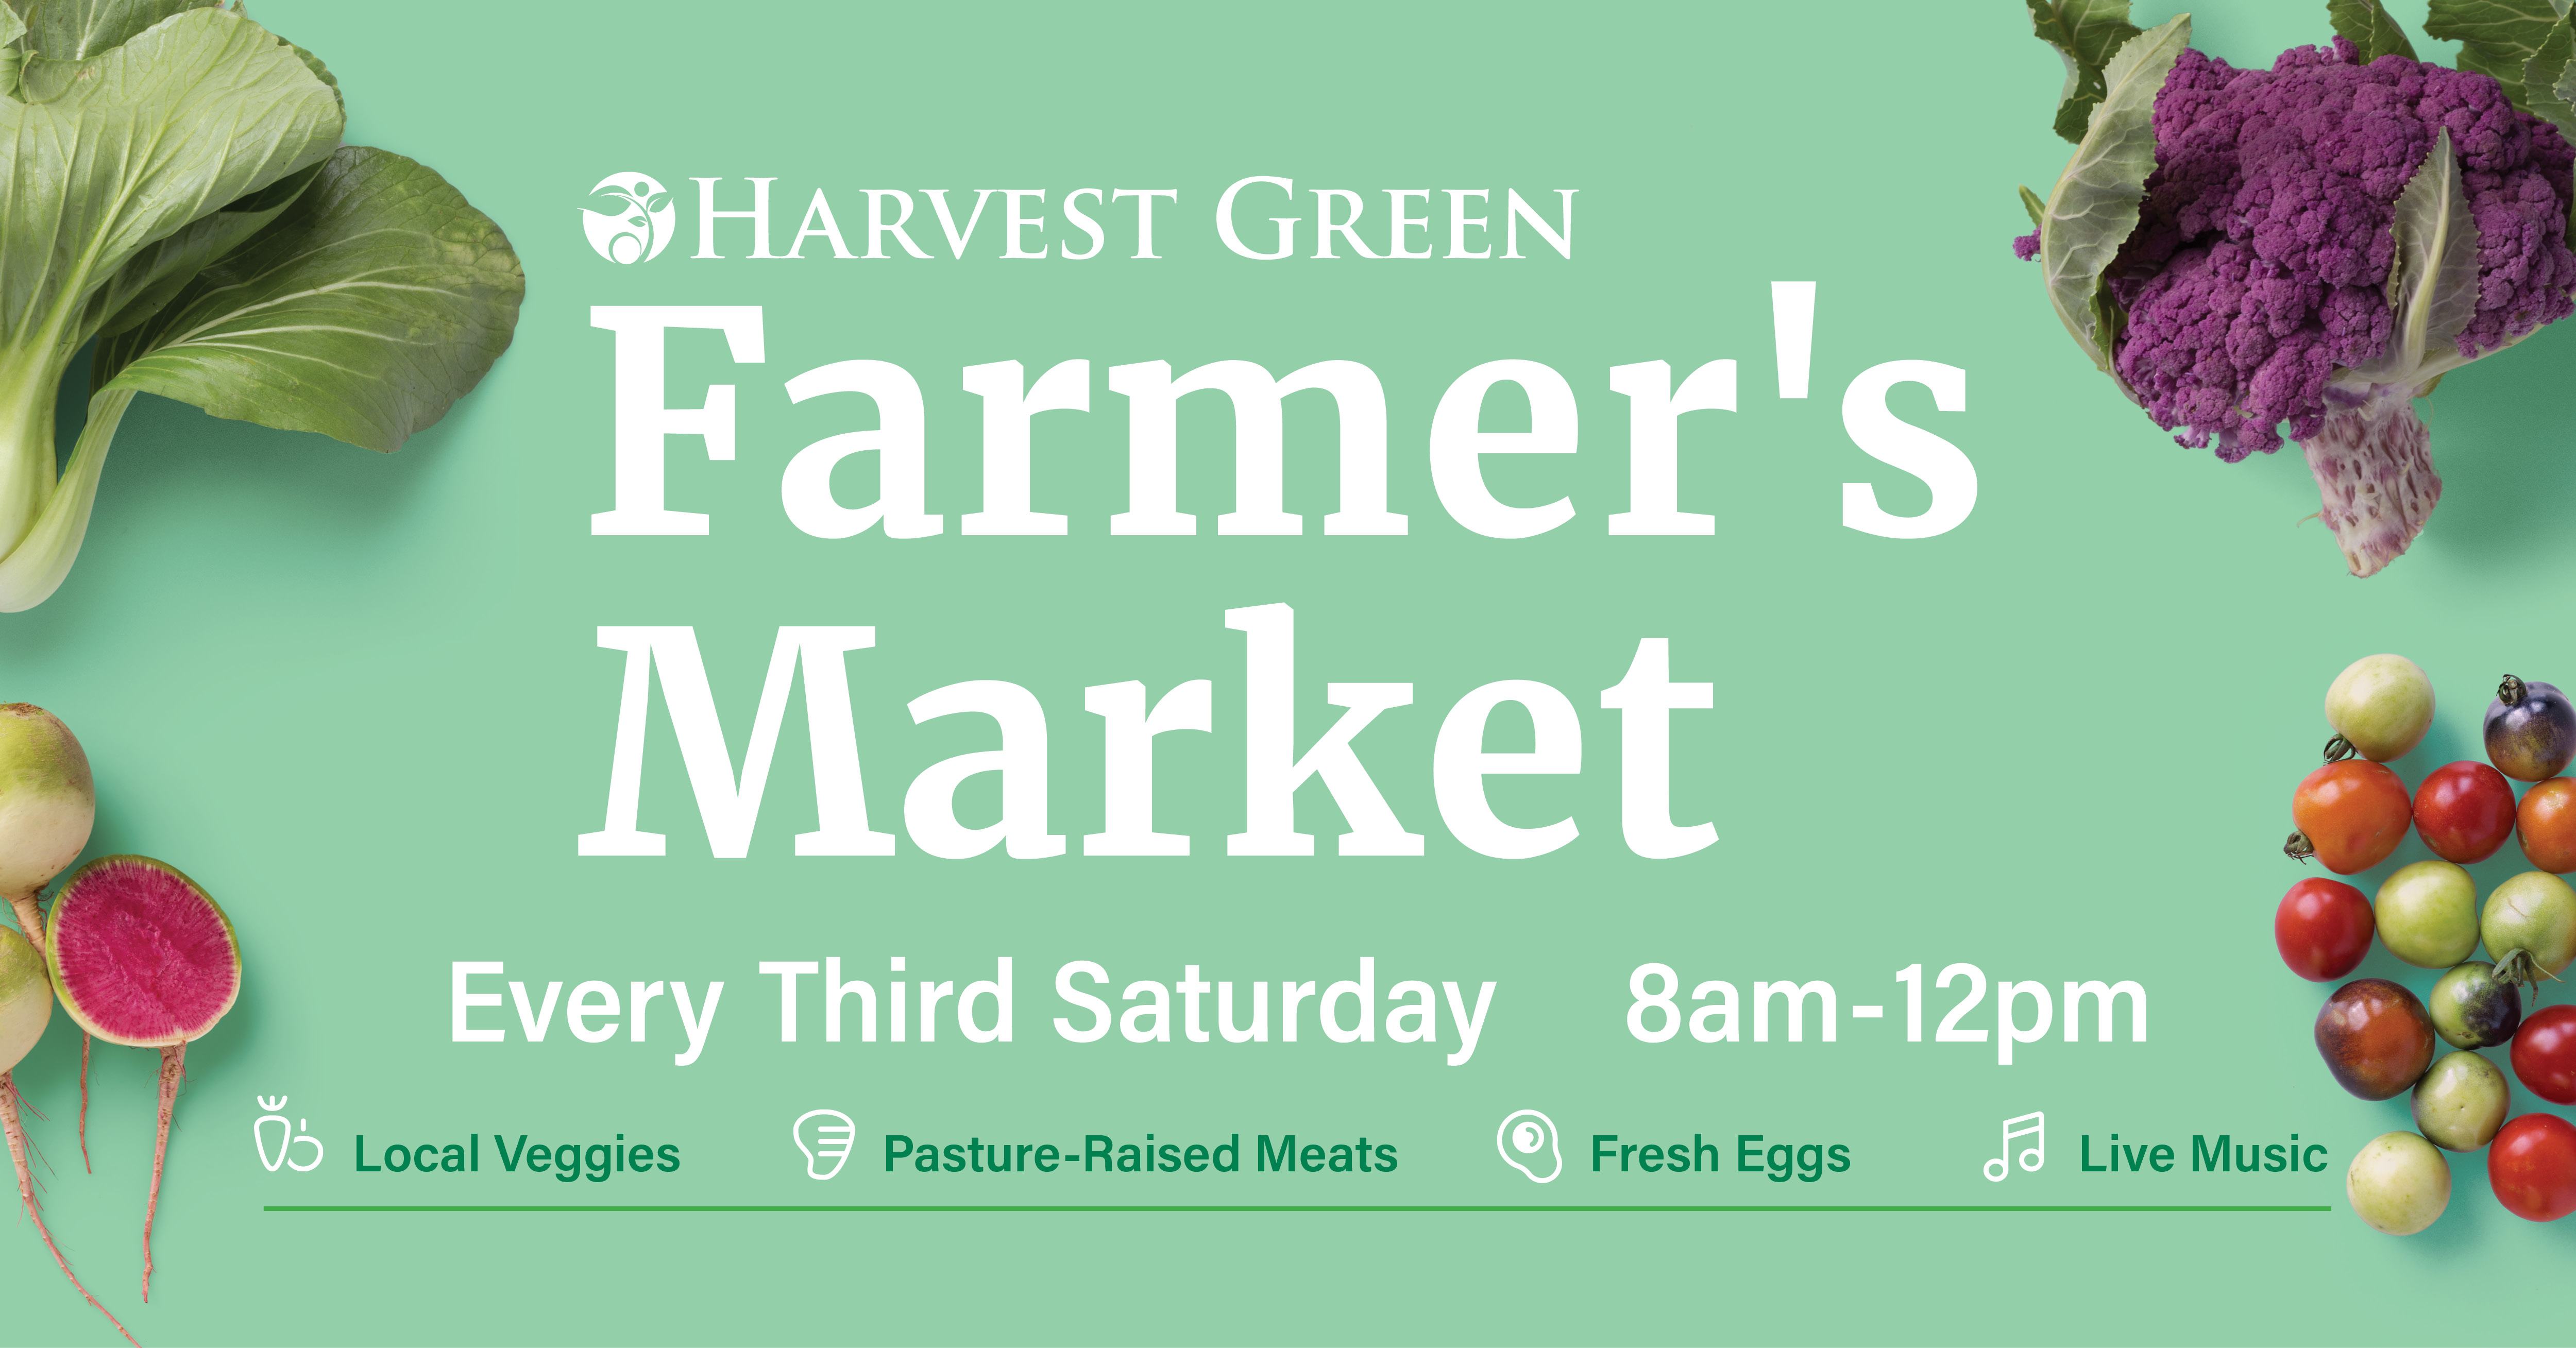 Farmer's Market October 16, 2021 Harvest Green Events